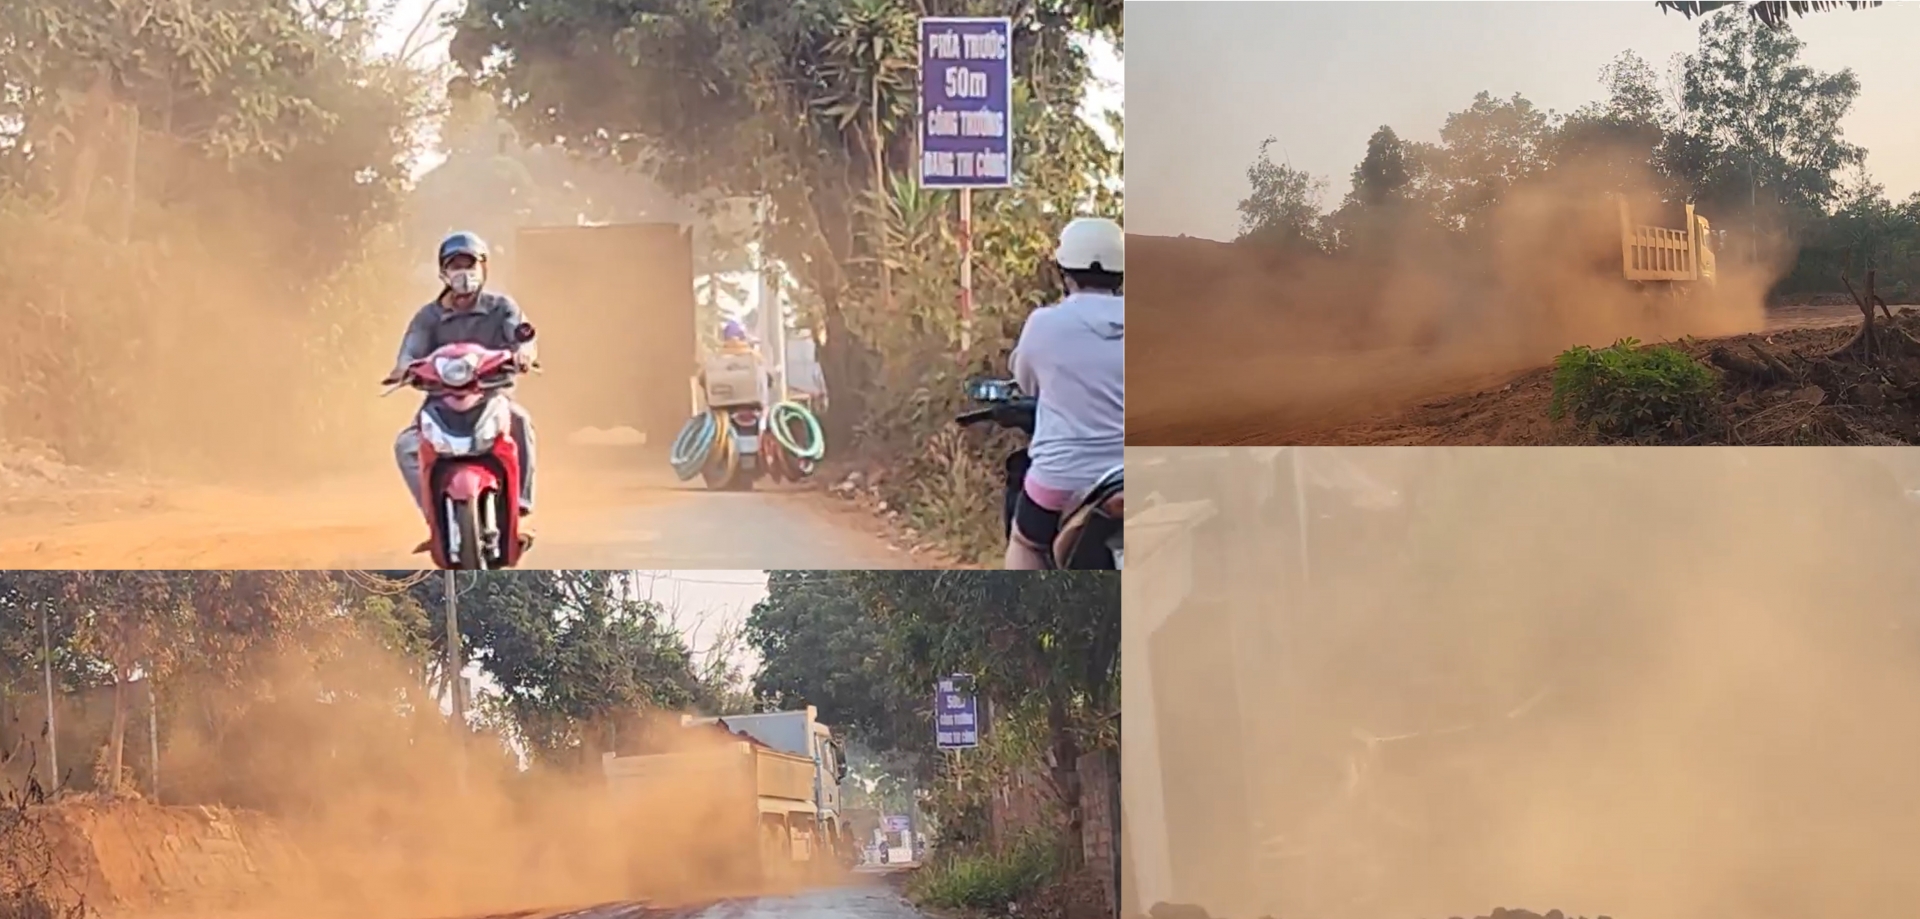 Gia Lai: ‘Bão bụi’ từ xe chở đất thi công cầu Nguyễn Văn Linh đoạn từ đường Trường Chinh - đường Lê Thánh Tôn